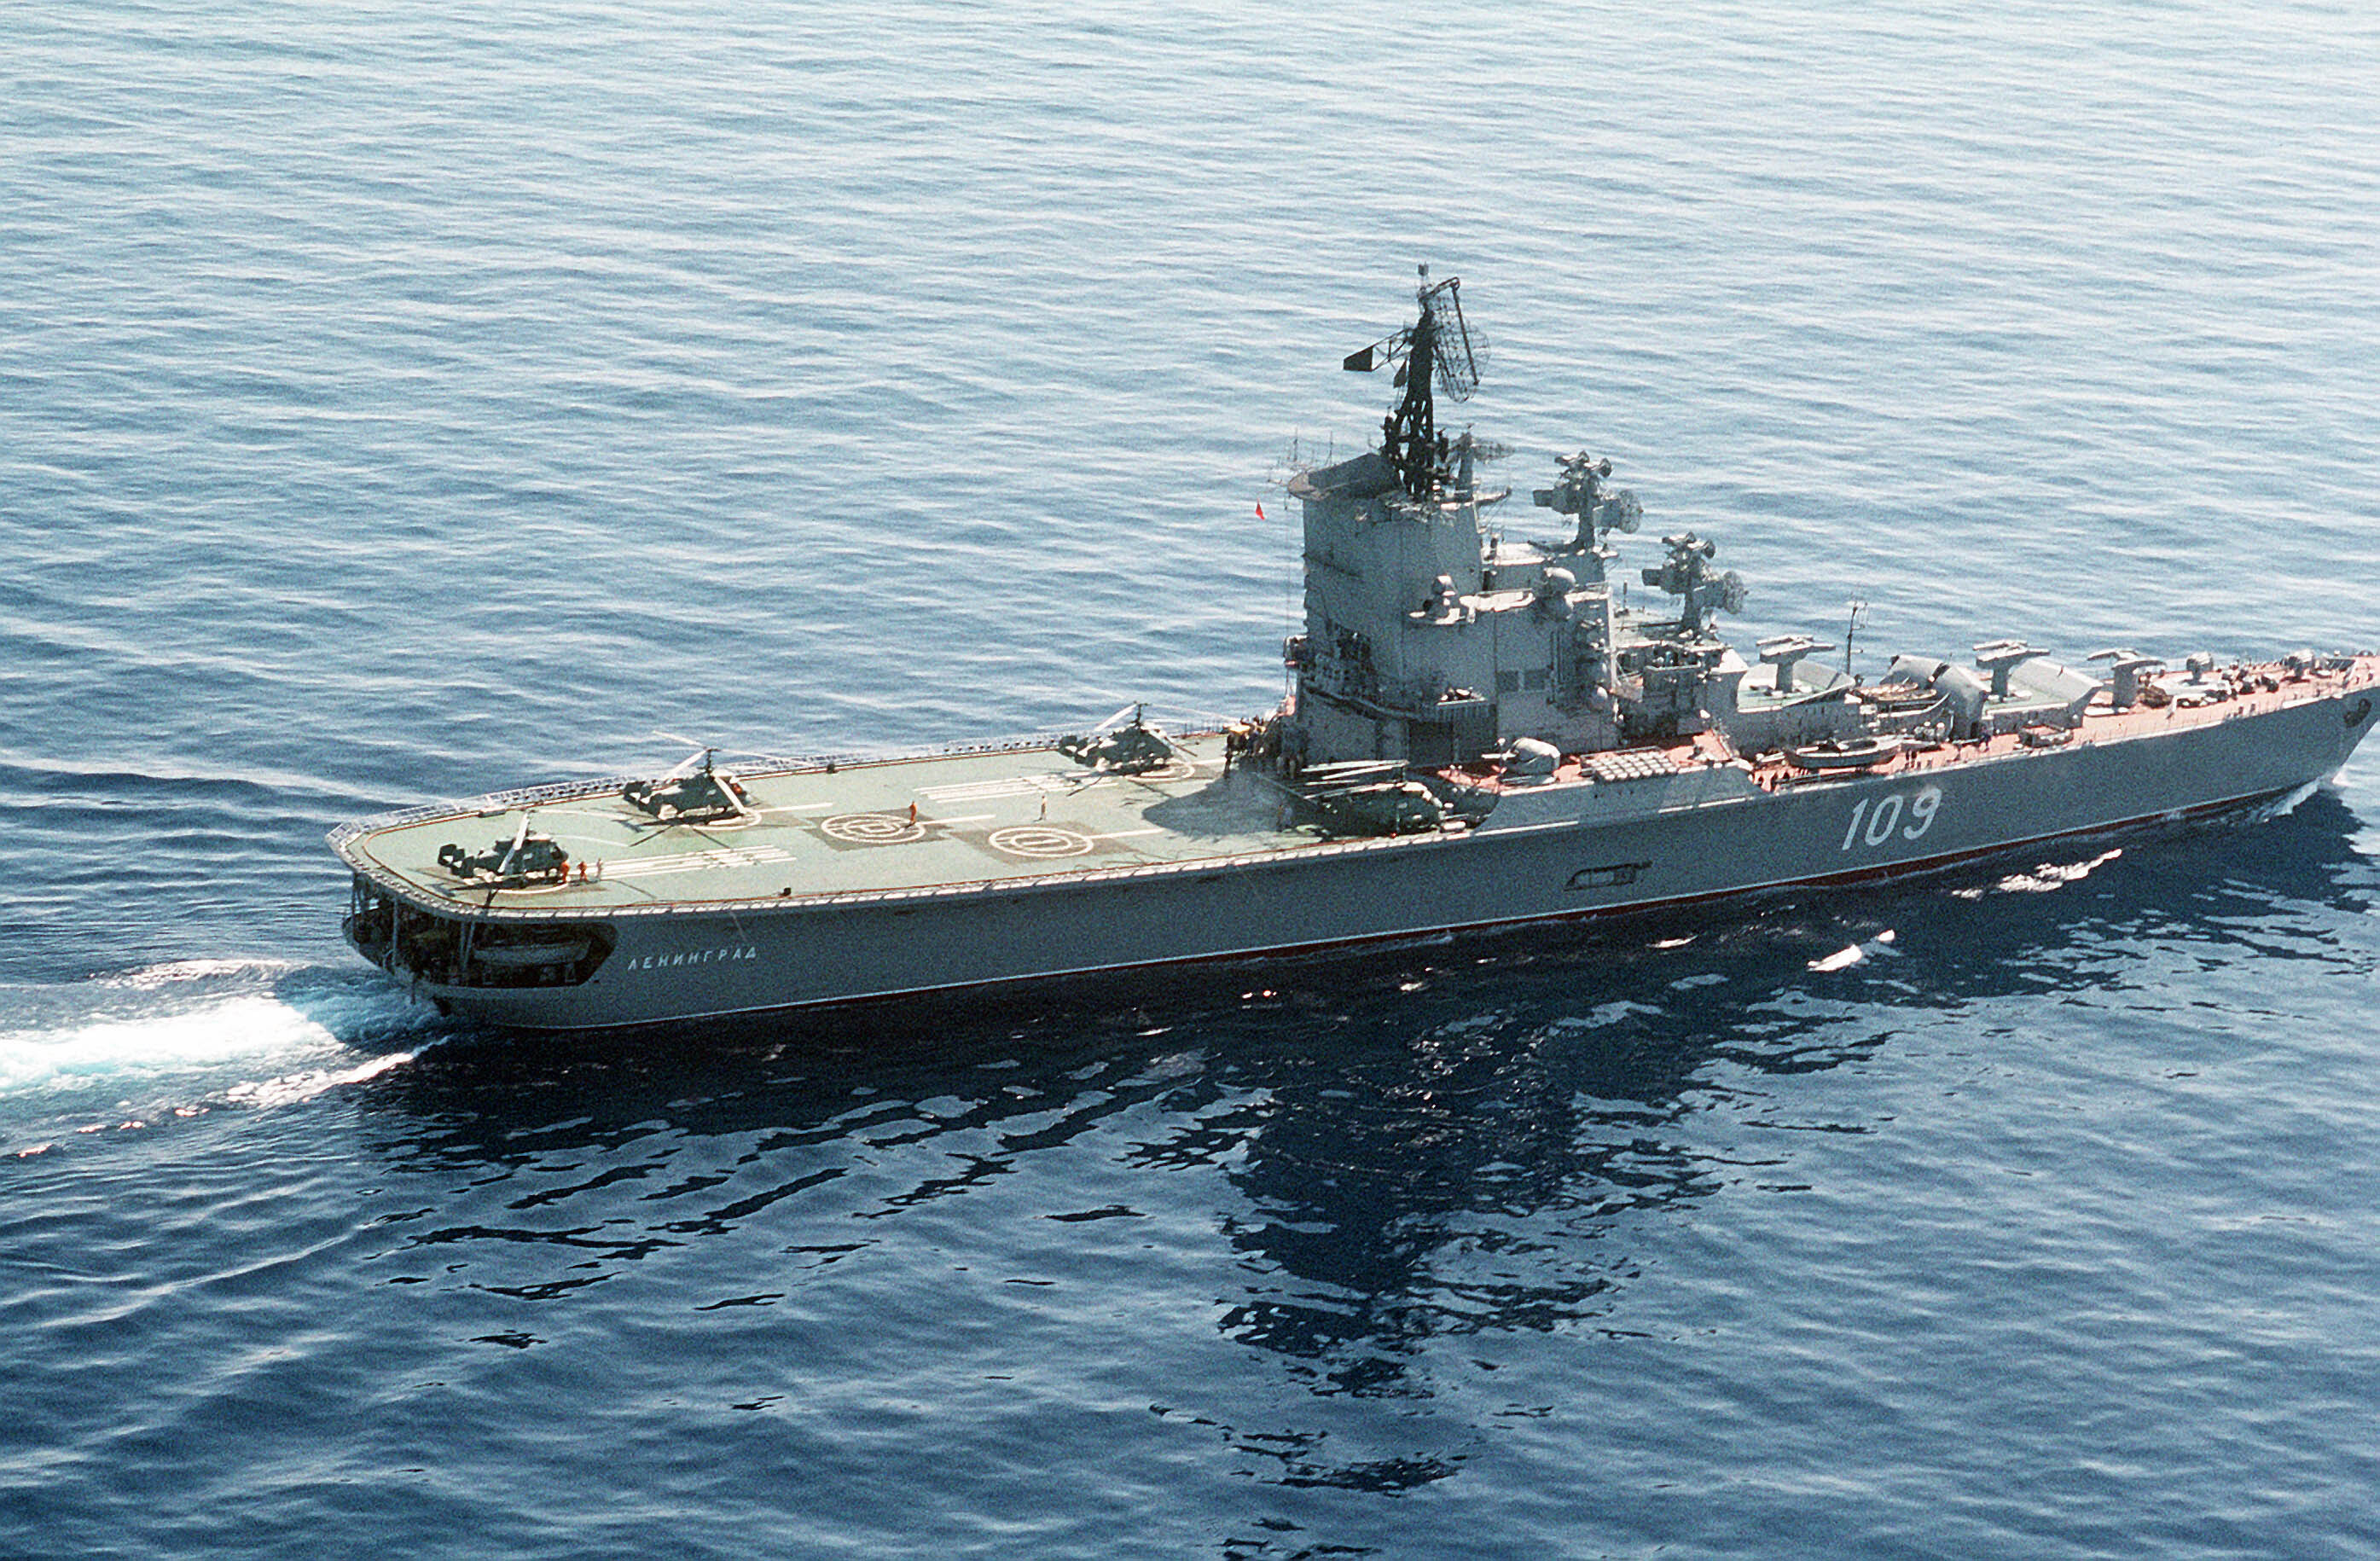 局座都不说的秘密--莫斯科级反潜巡洋舰反潜战